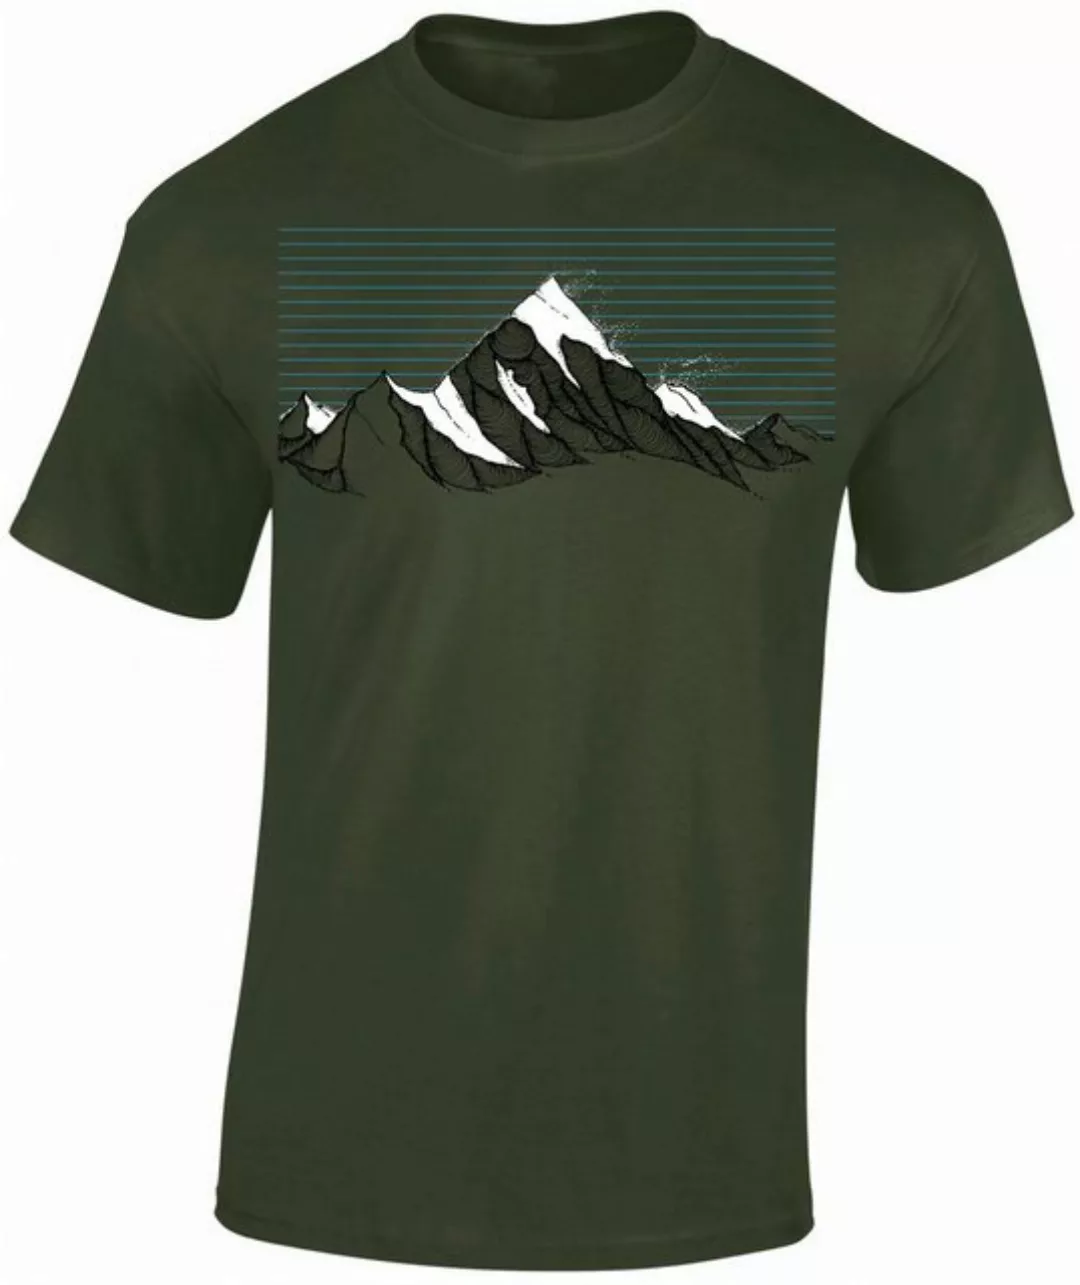 Baddery Print-Shirt Wander T-Shirt: "Bergwind" - Kletter T-Shirt für Wander günstig online kaufen